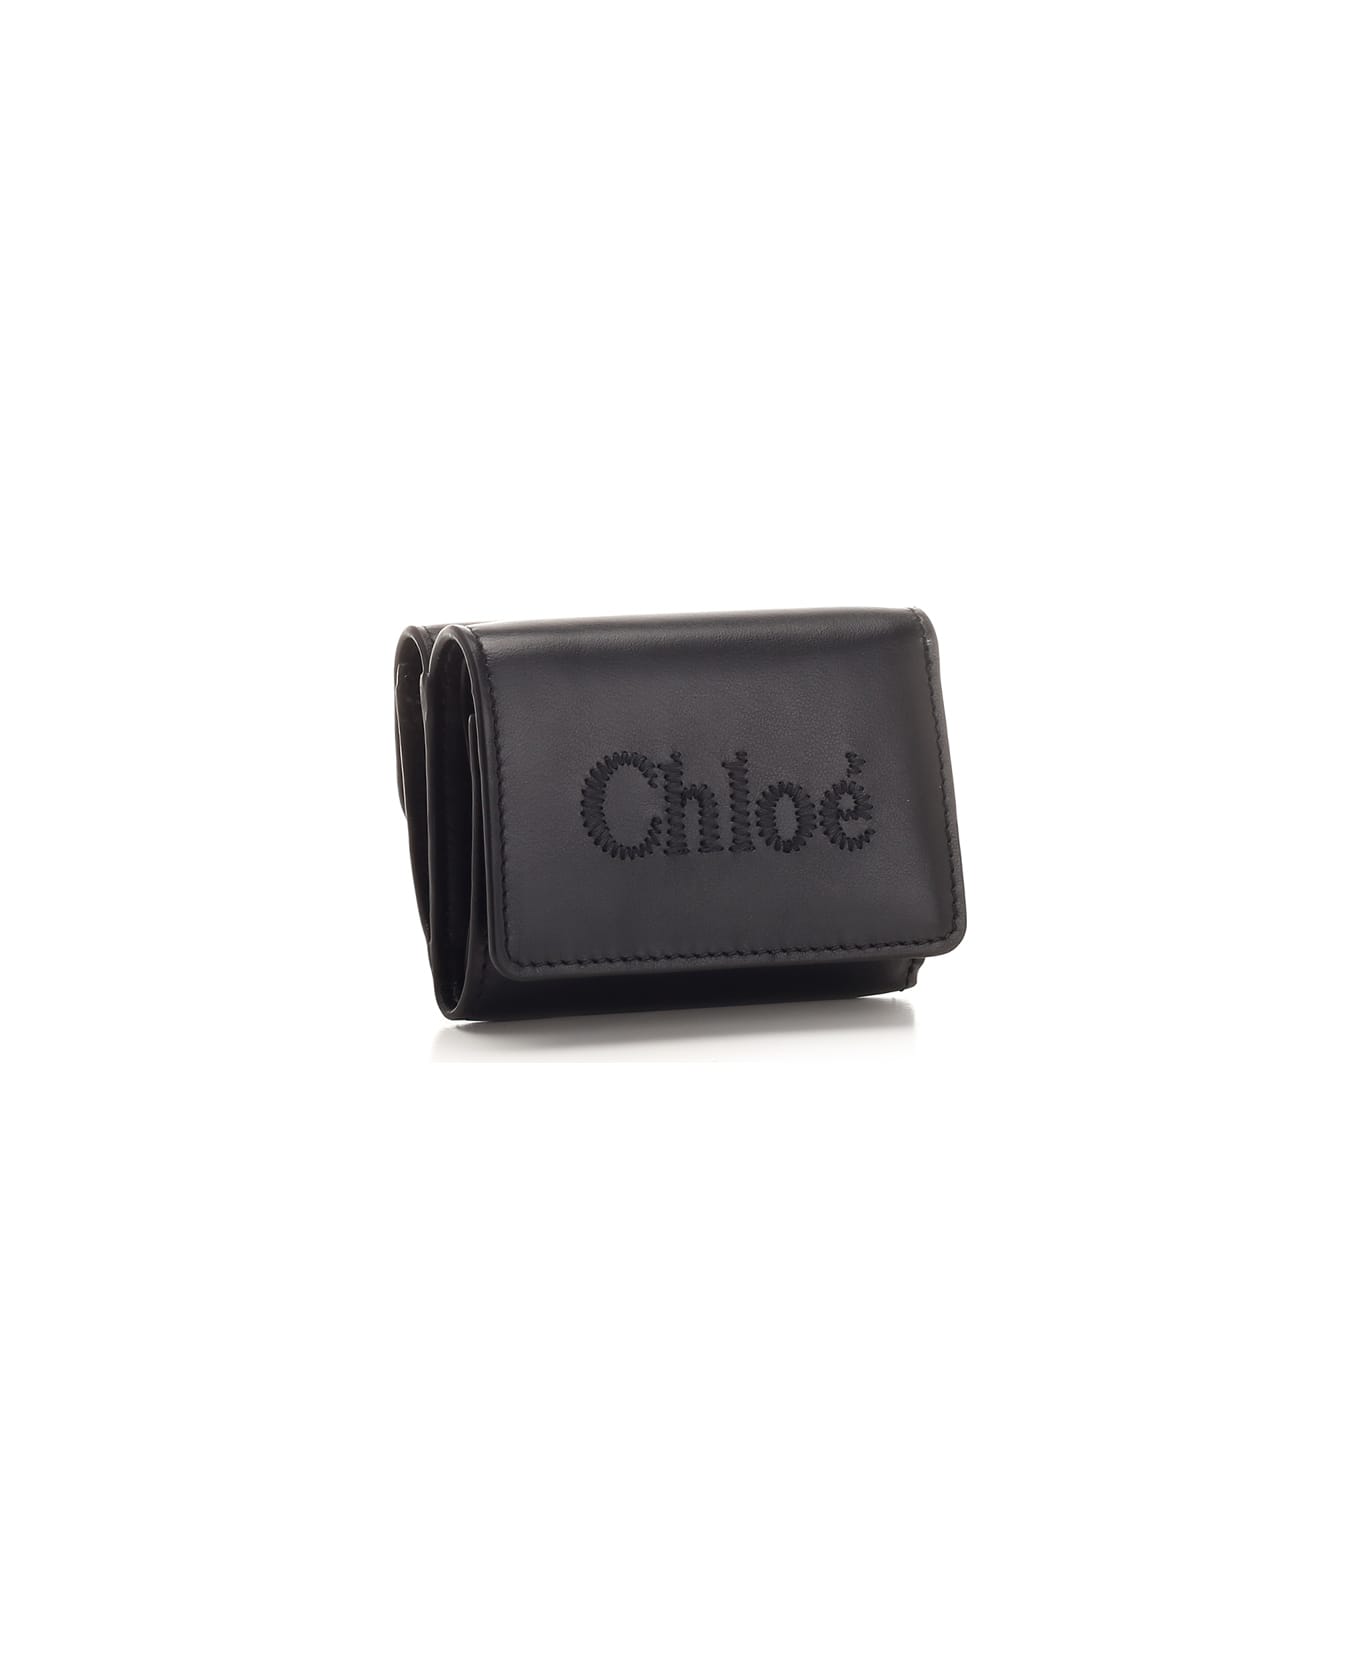 Chloé Black 'chloè Sense' Trifold Wallet - Black 財布